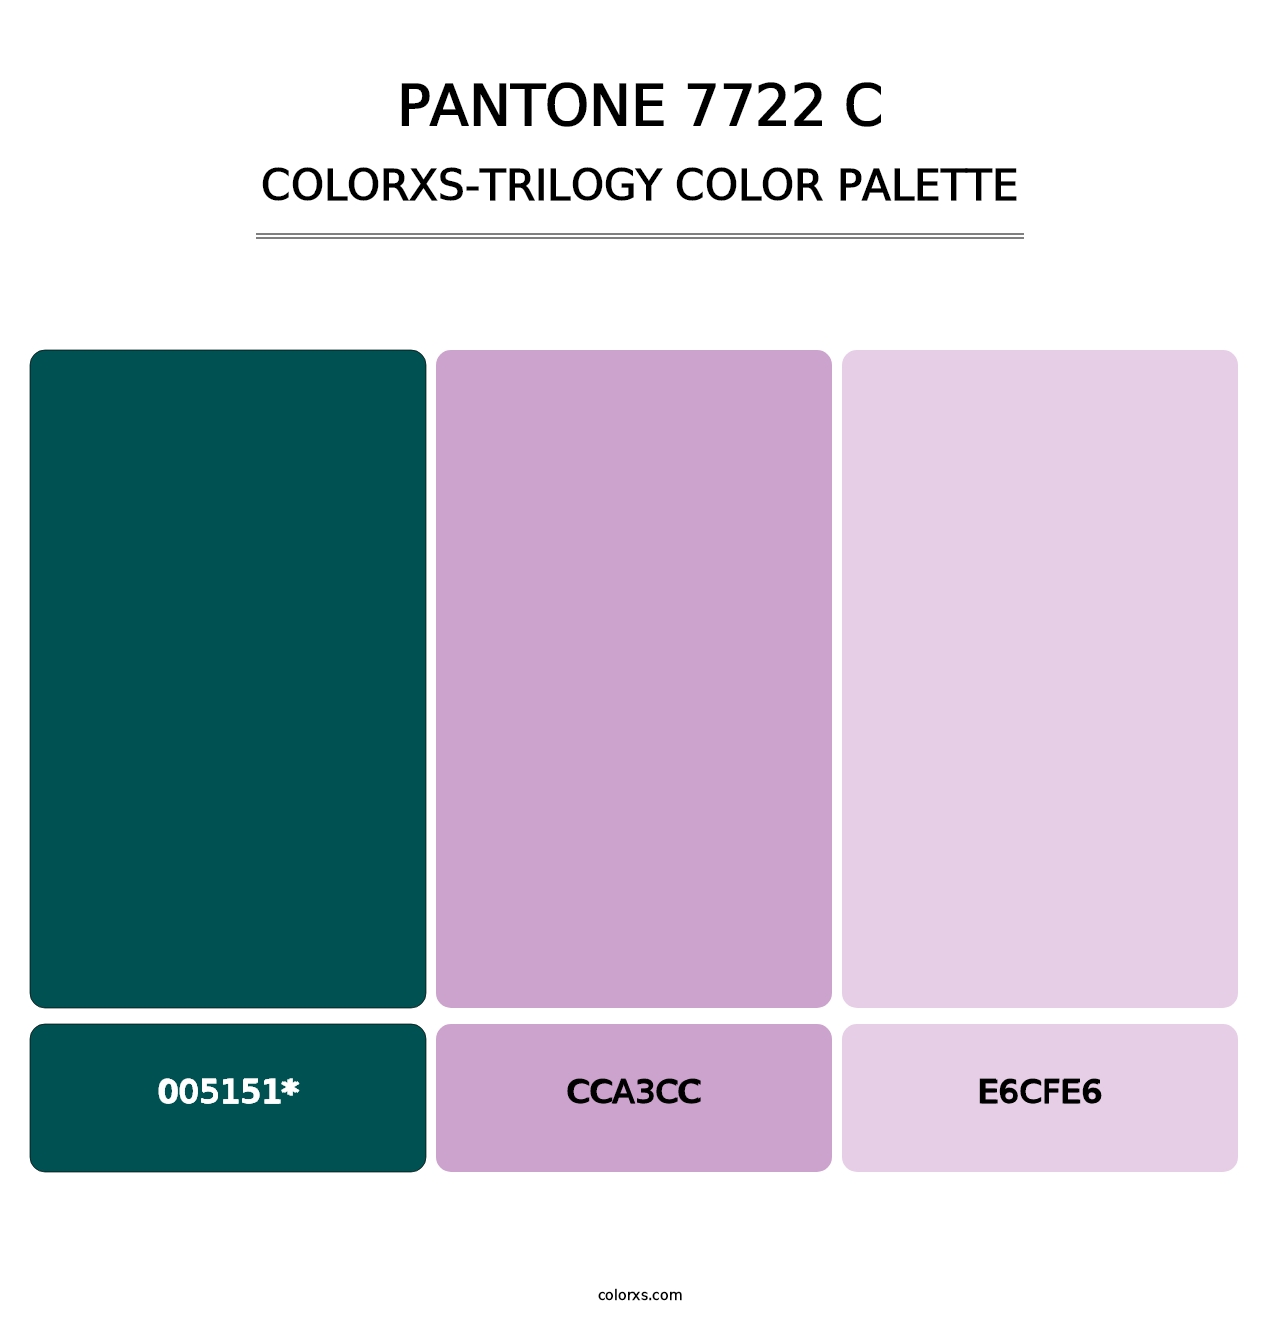 PANTONE 7722 C - Colorxs Trilogy Palette